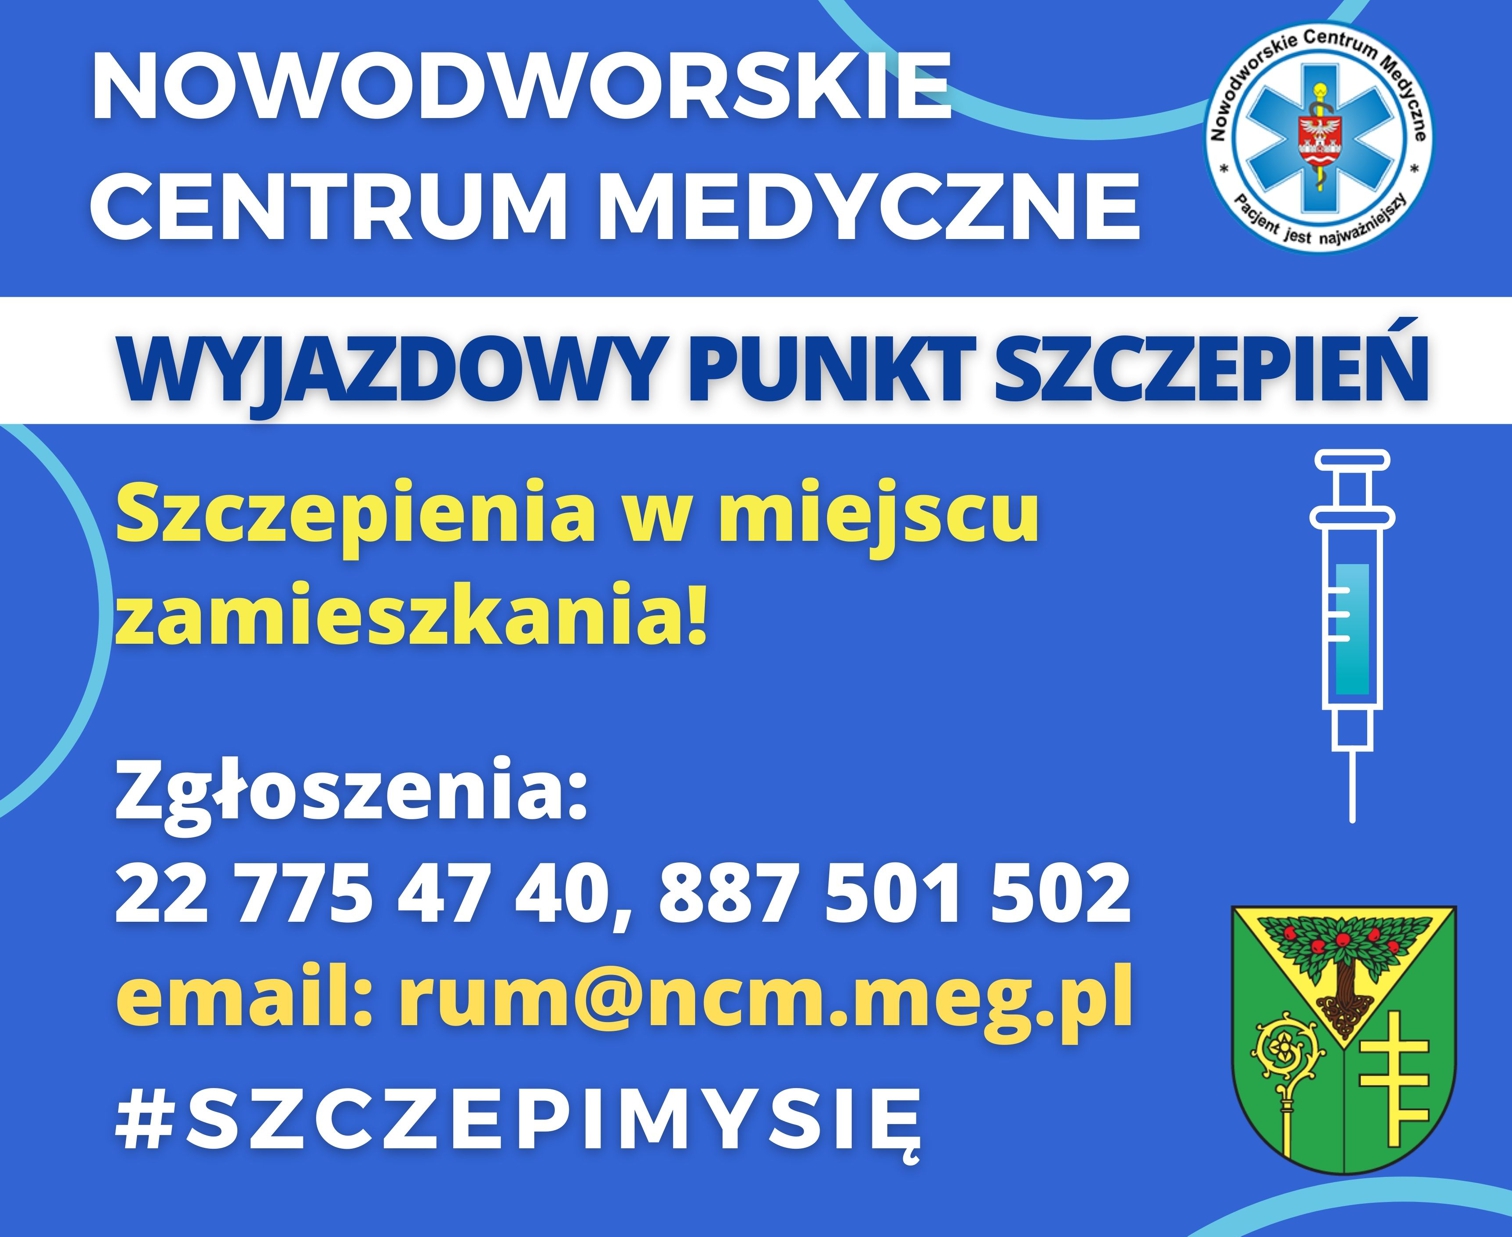 Nowodworskie Centrum Medyczne wyjazdowy punkt szczepień Zgłoszenia osób chętnych przyjmowane są telefonicznie pod numerami telefonu: 22 775 47 40, 887 501 502 lun mailem: rum@ncm.meg.pl